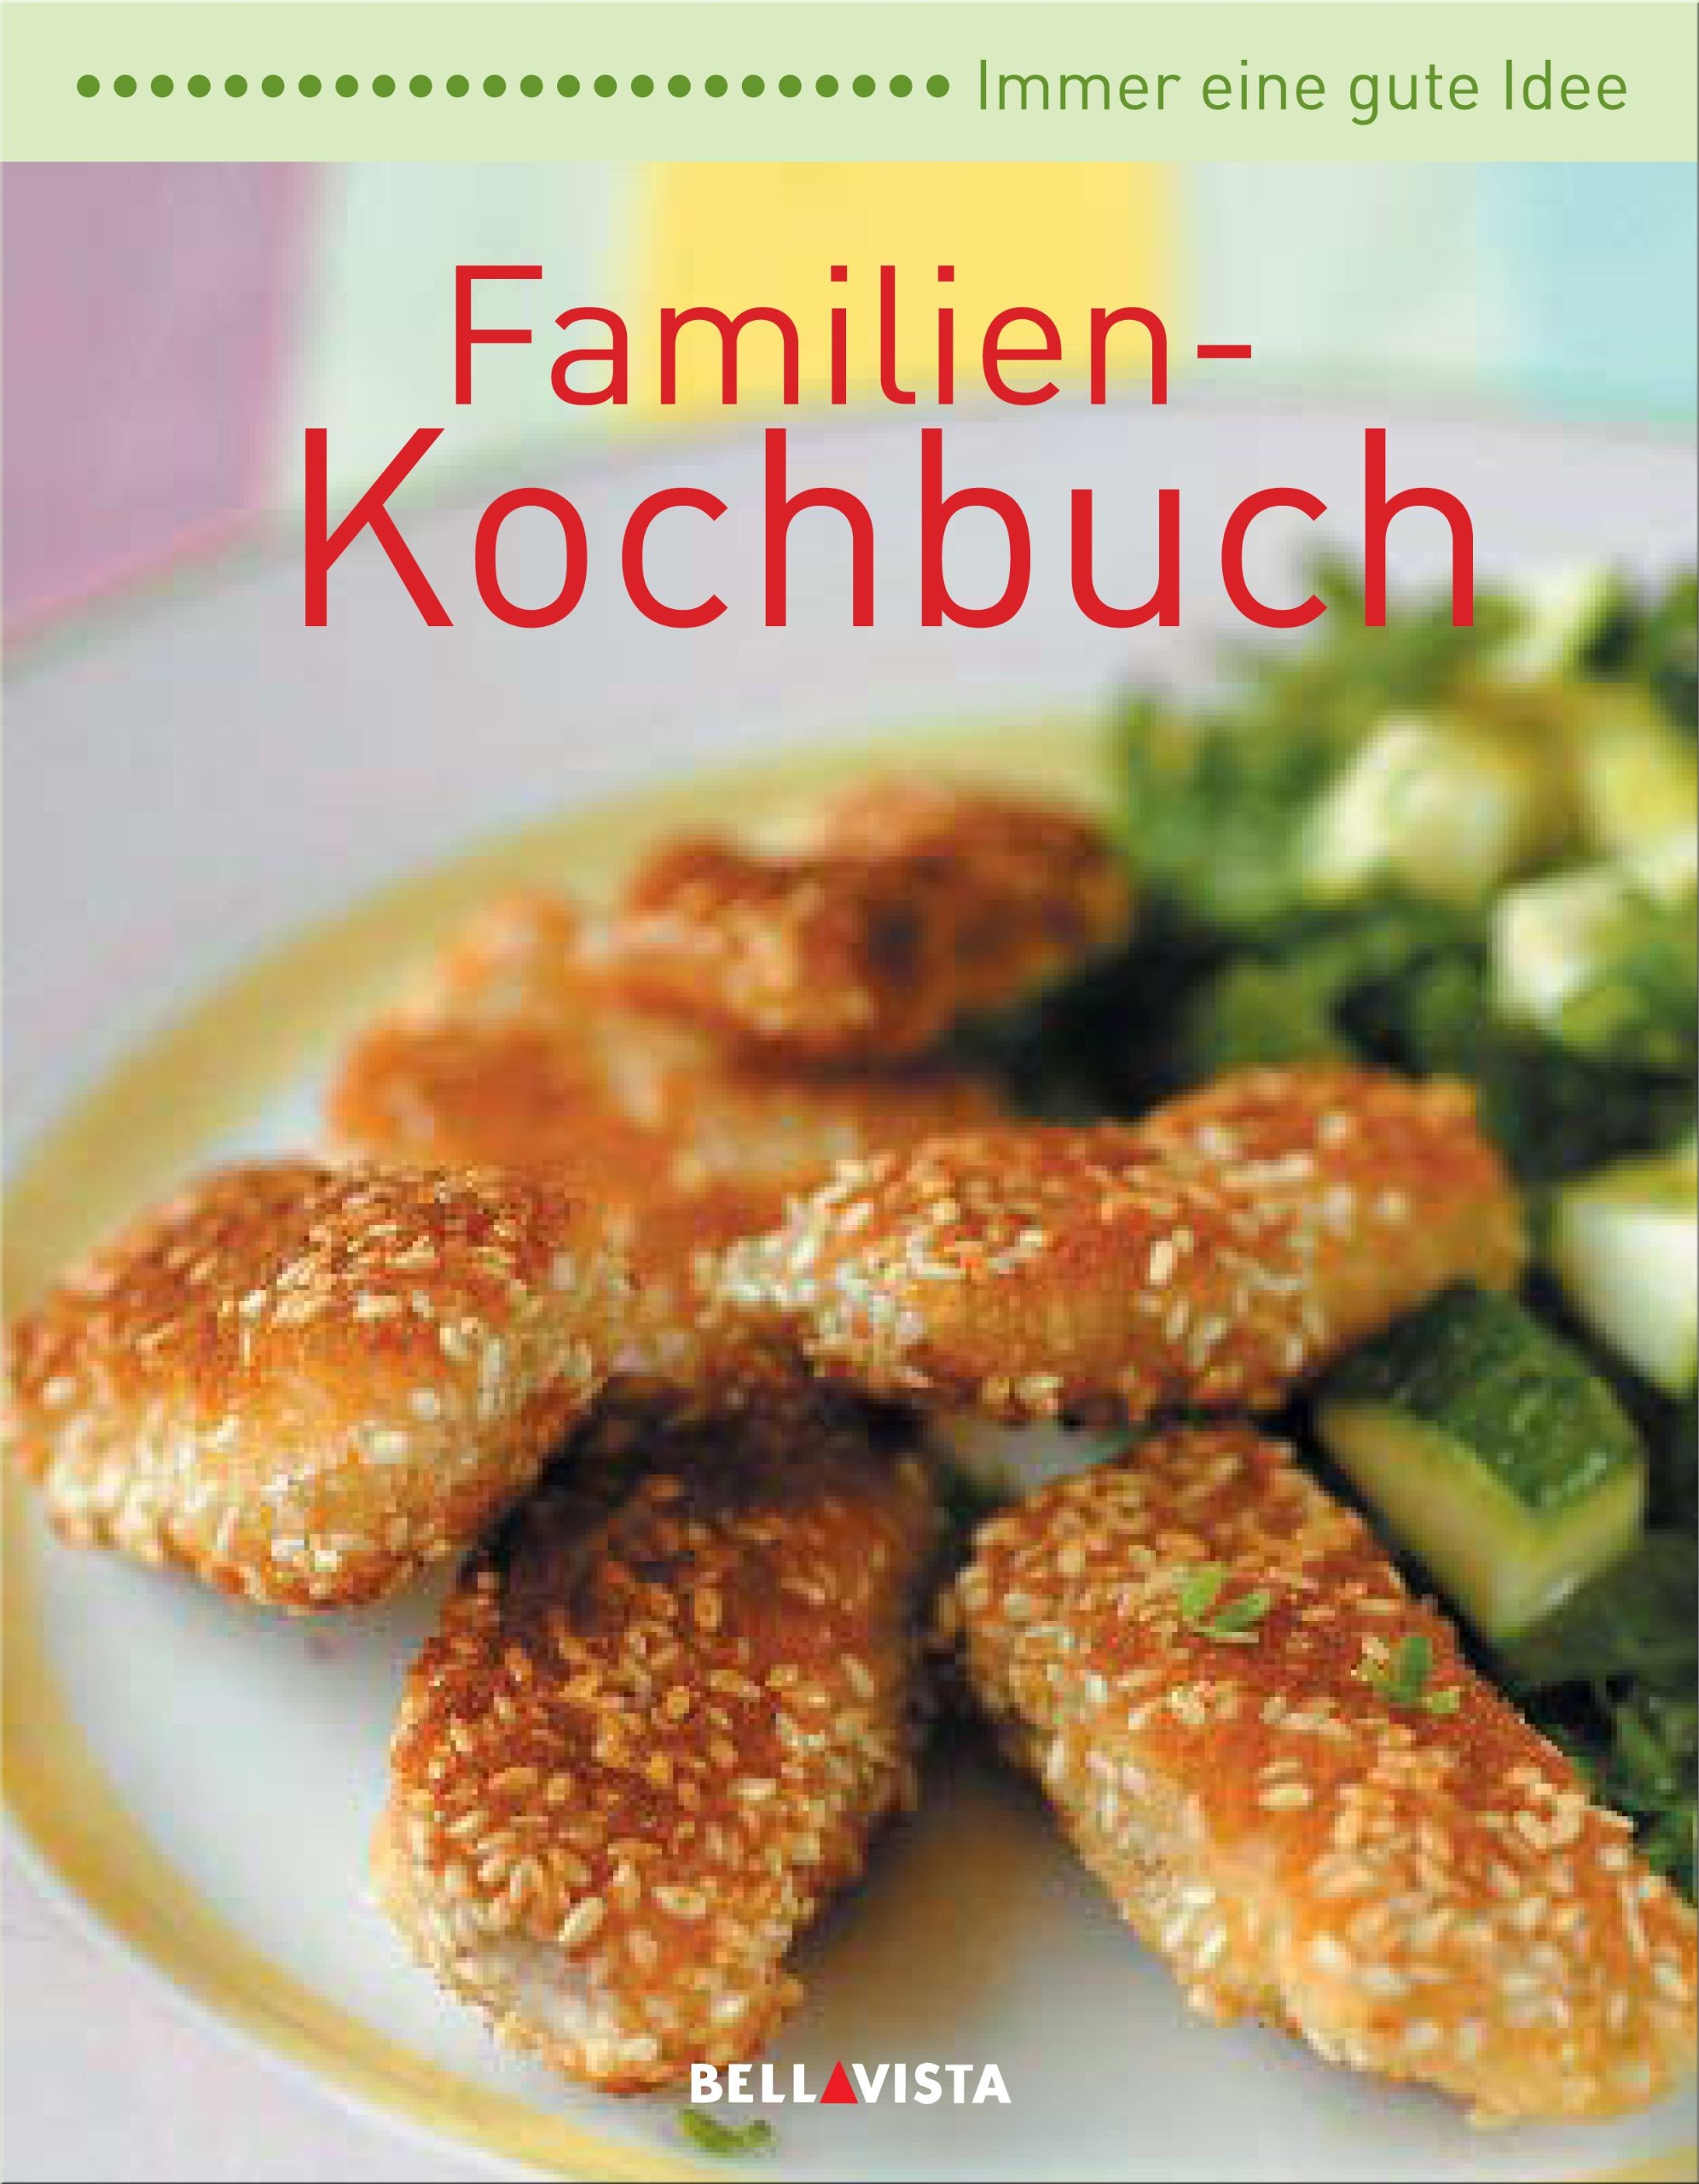 Immer eine gute Idee... - Familien-Kochbuch - Karl Müller Verlag / Bellavista (Herausgeber)